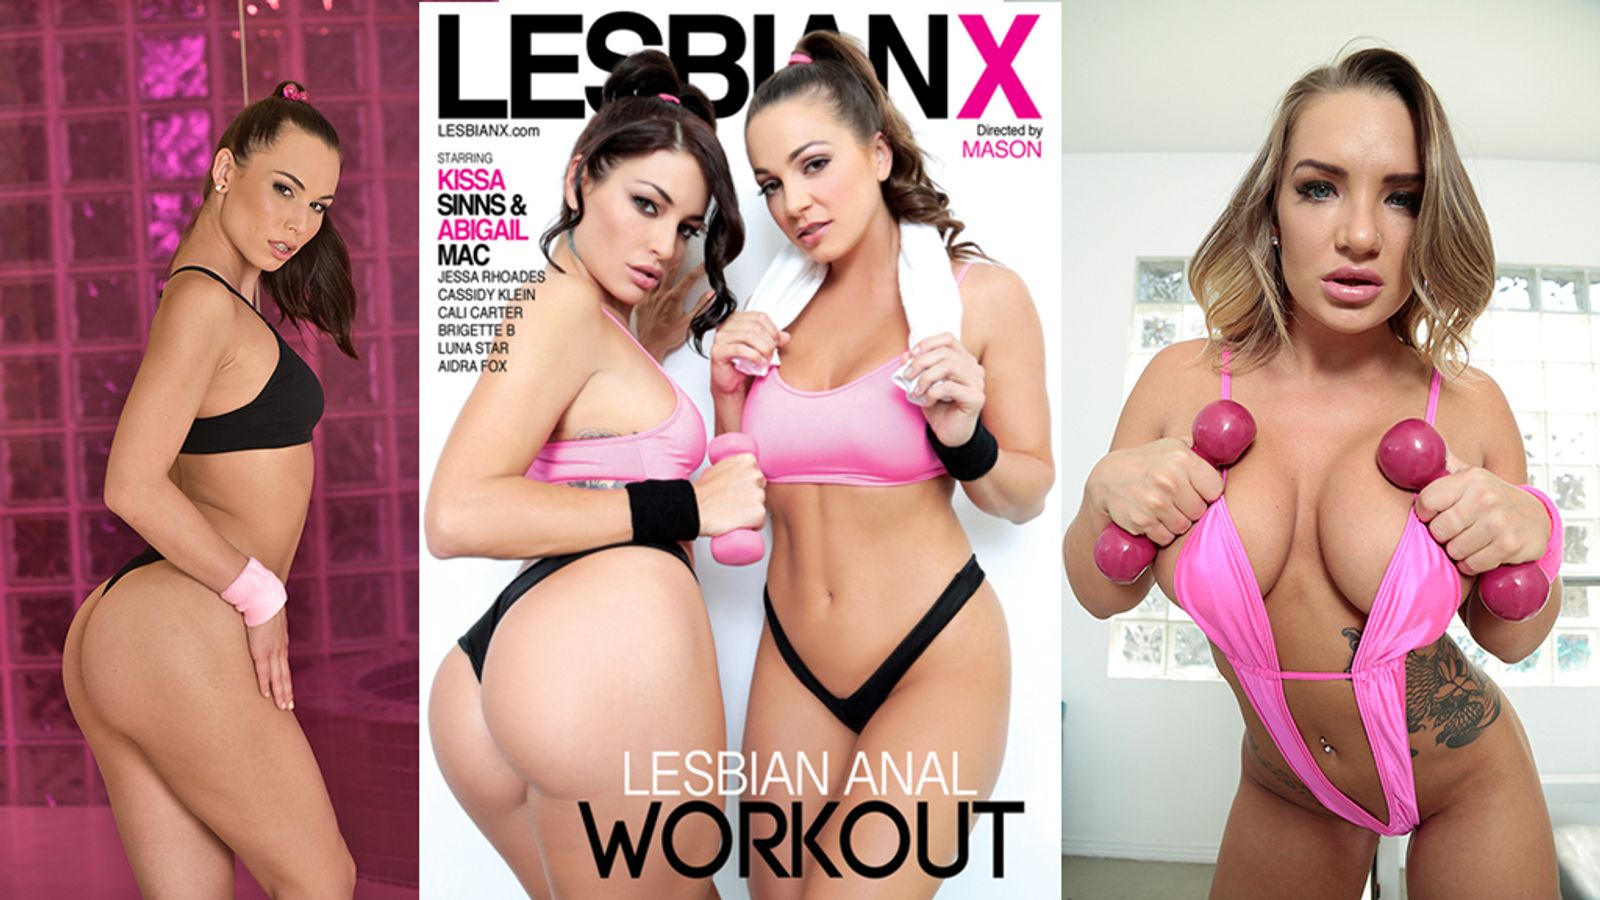 Talk About Ass Worship! Lesbian X Debuts ‘Lesbian Anal Workout’